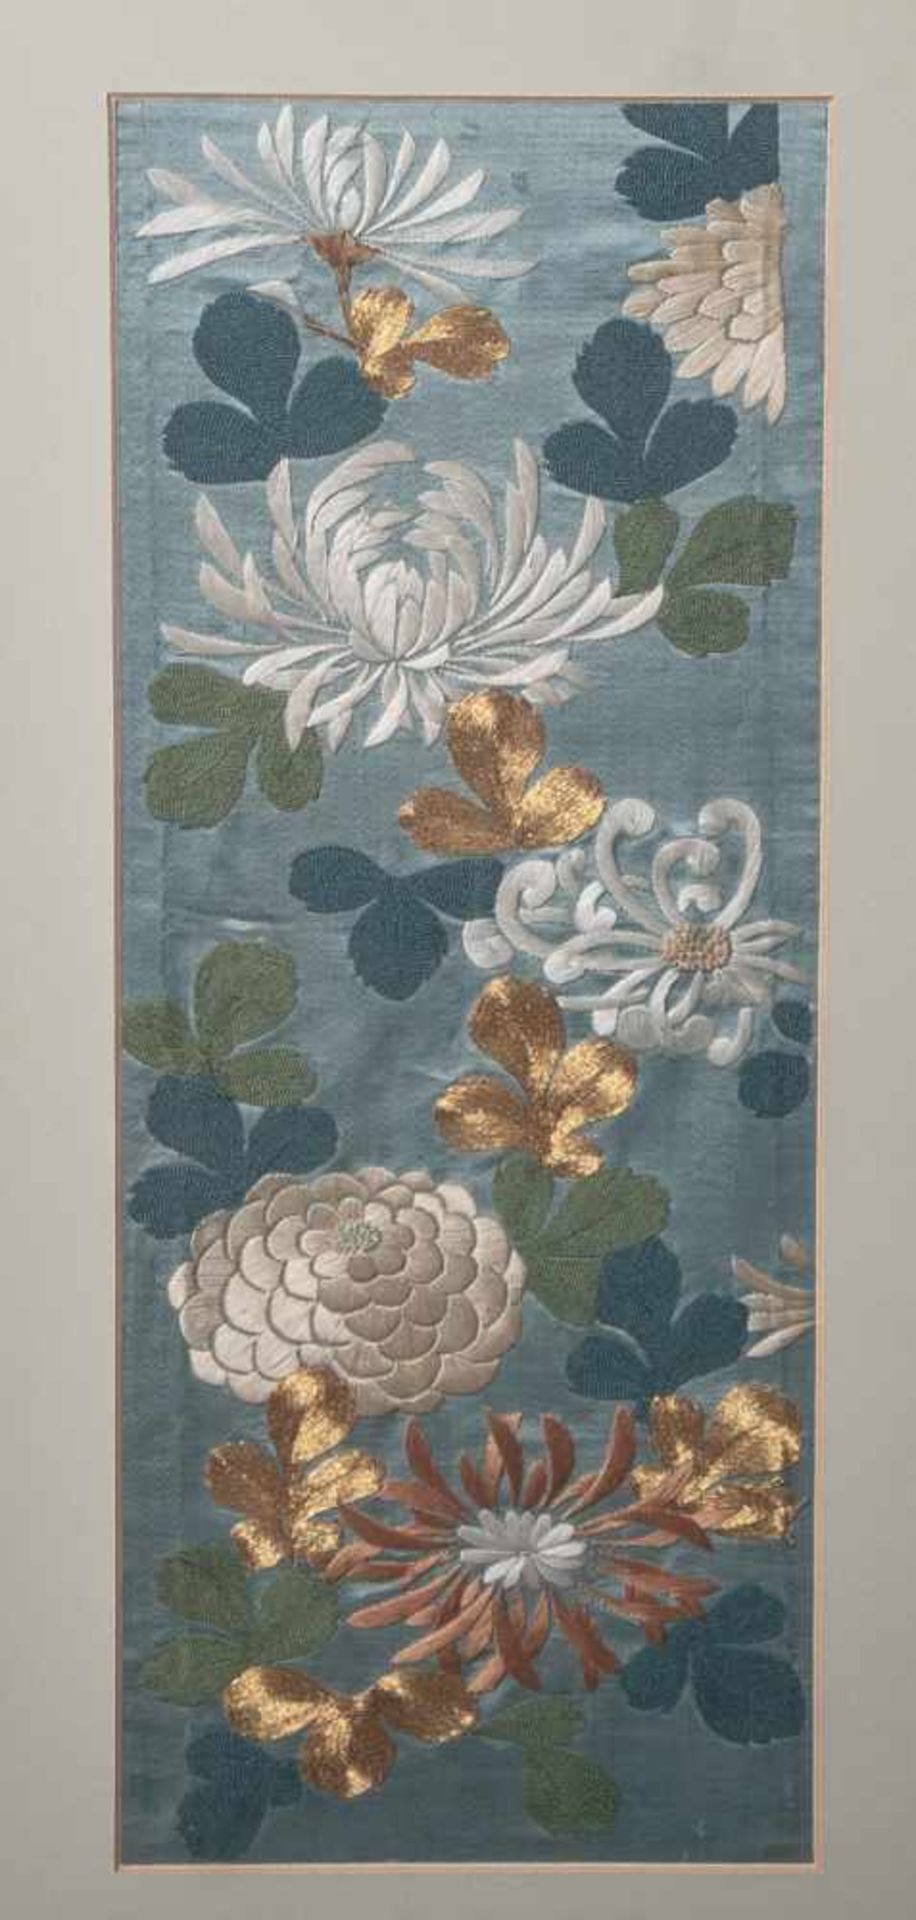 Feine Seidenstickarbeit, Darstellung von Blumen (China oder Japan, wohl 19. Jahrhundert),teils mit